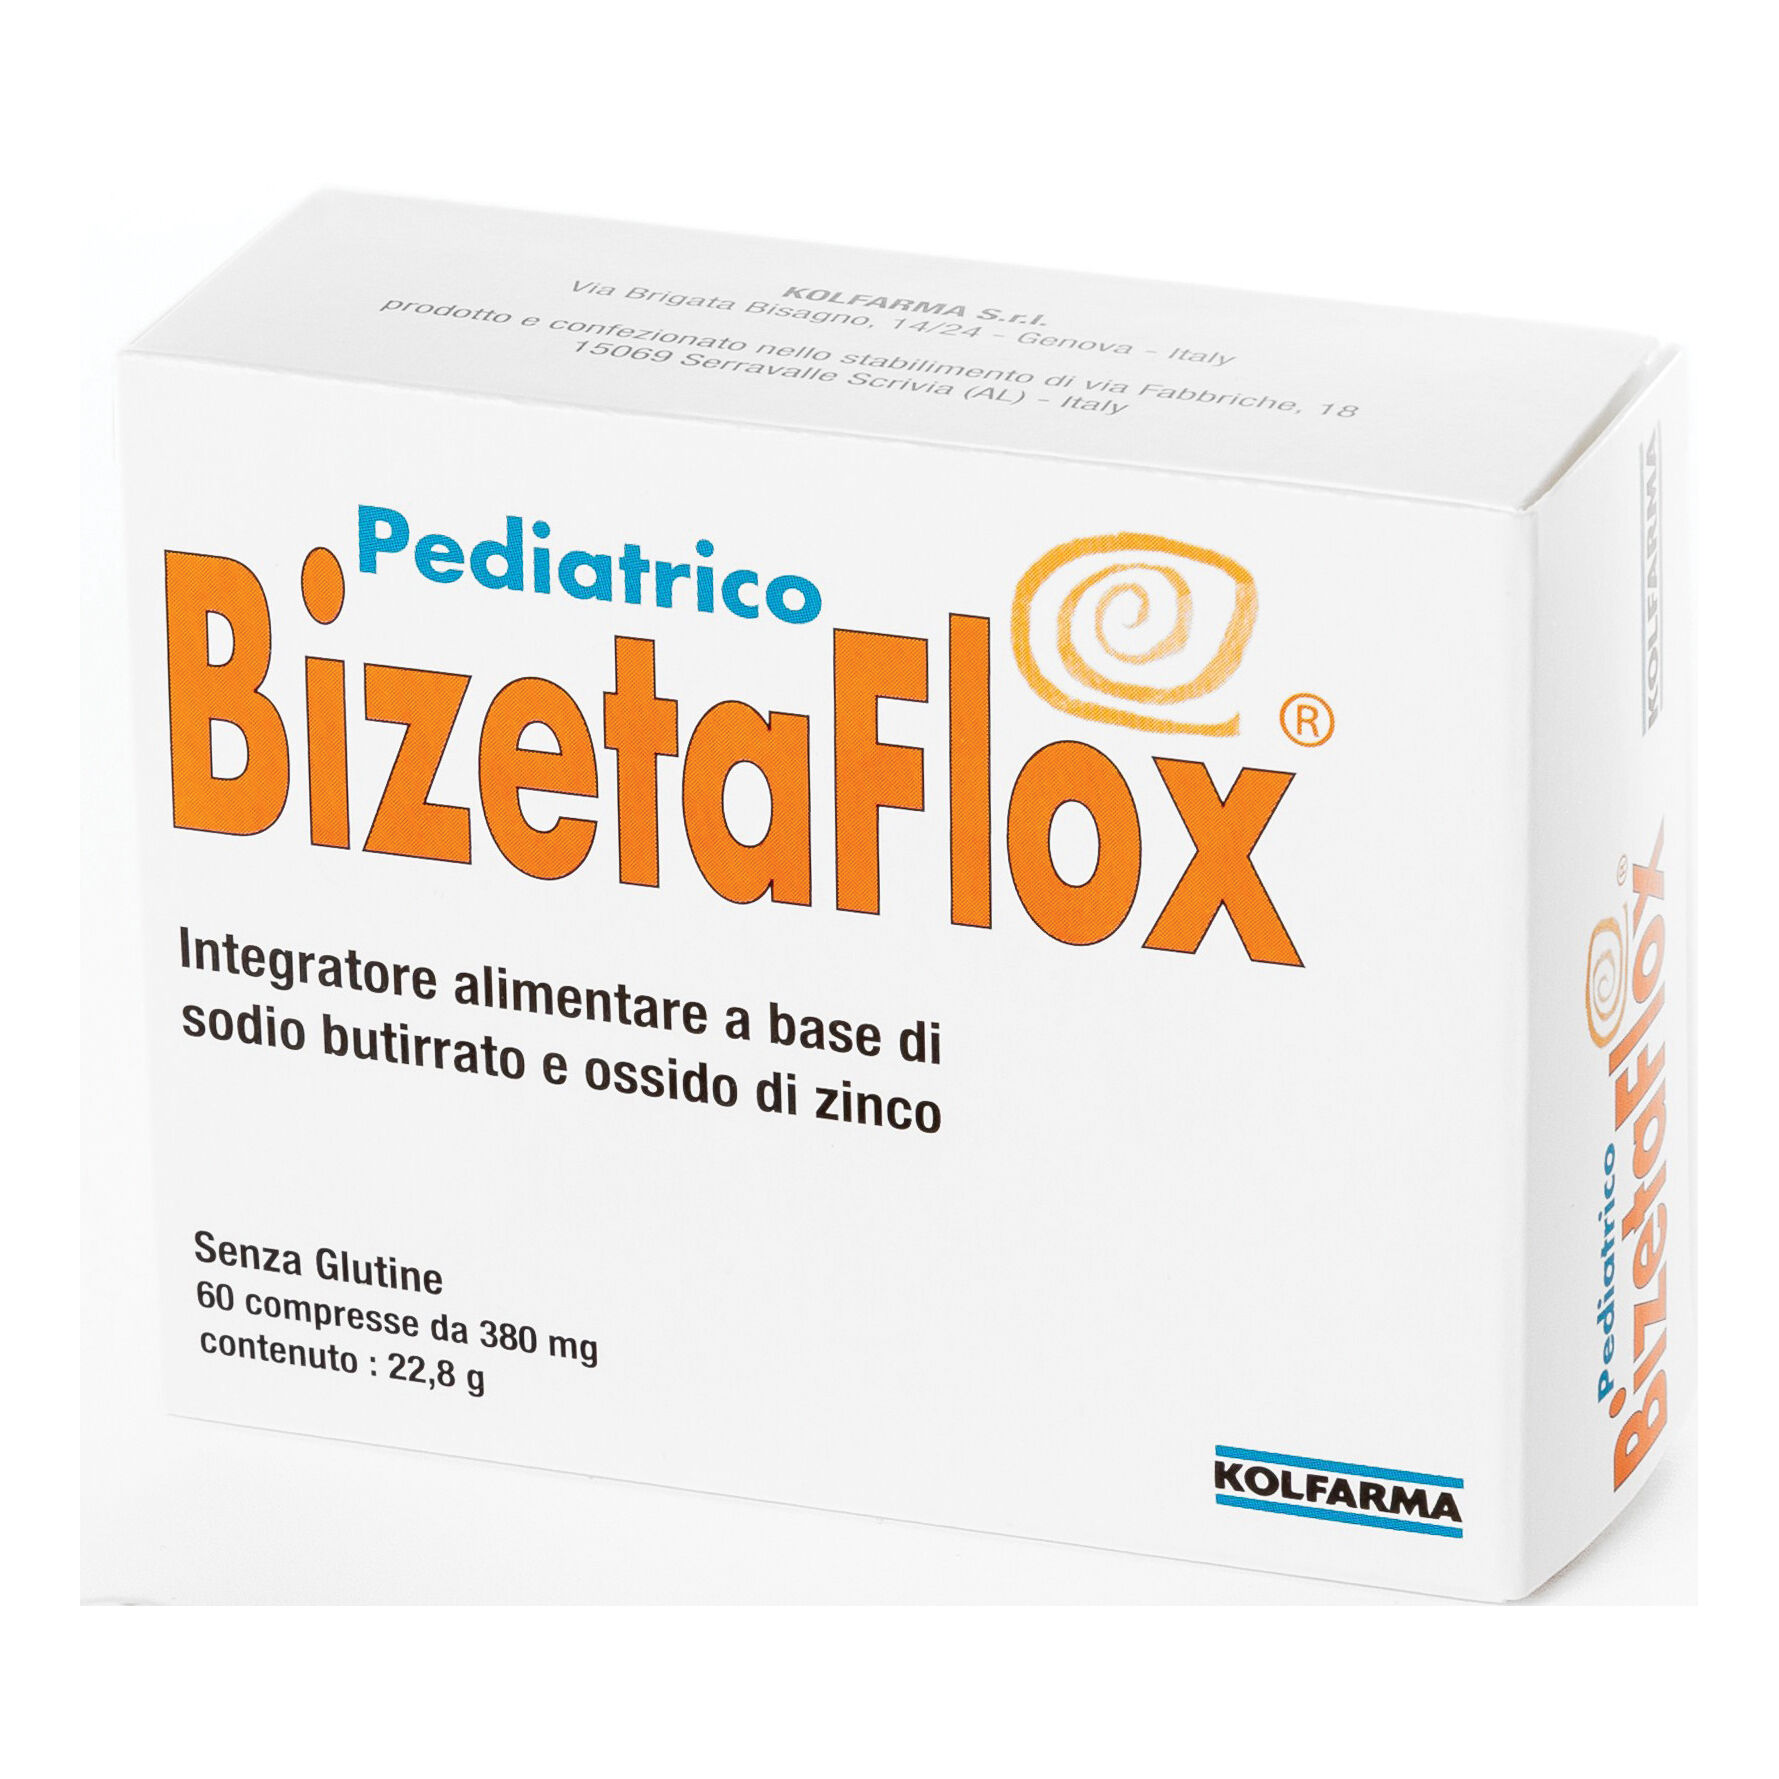 Kolfarma Srl Bizetaflox Pediatrico 60cpr